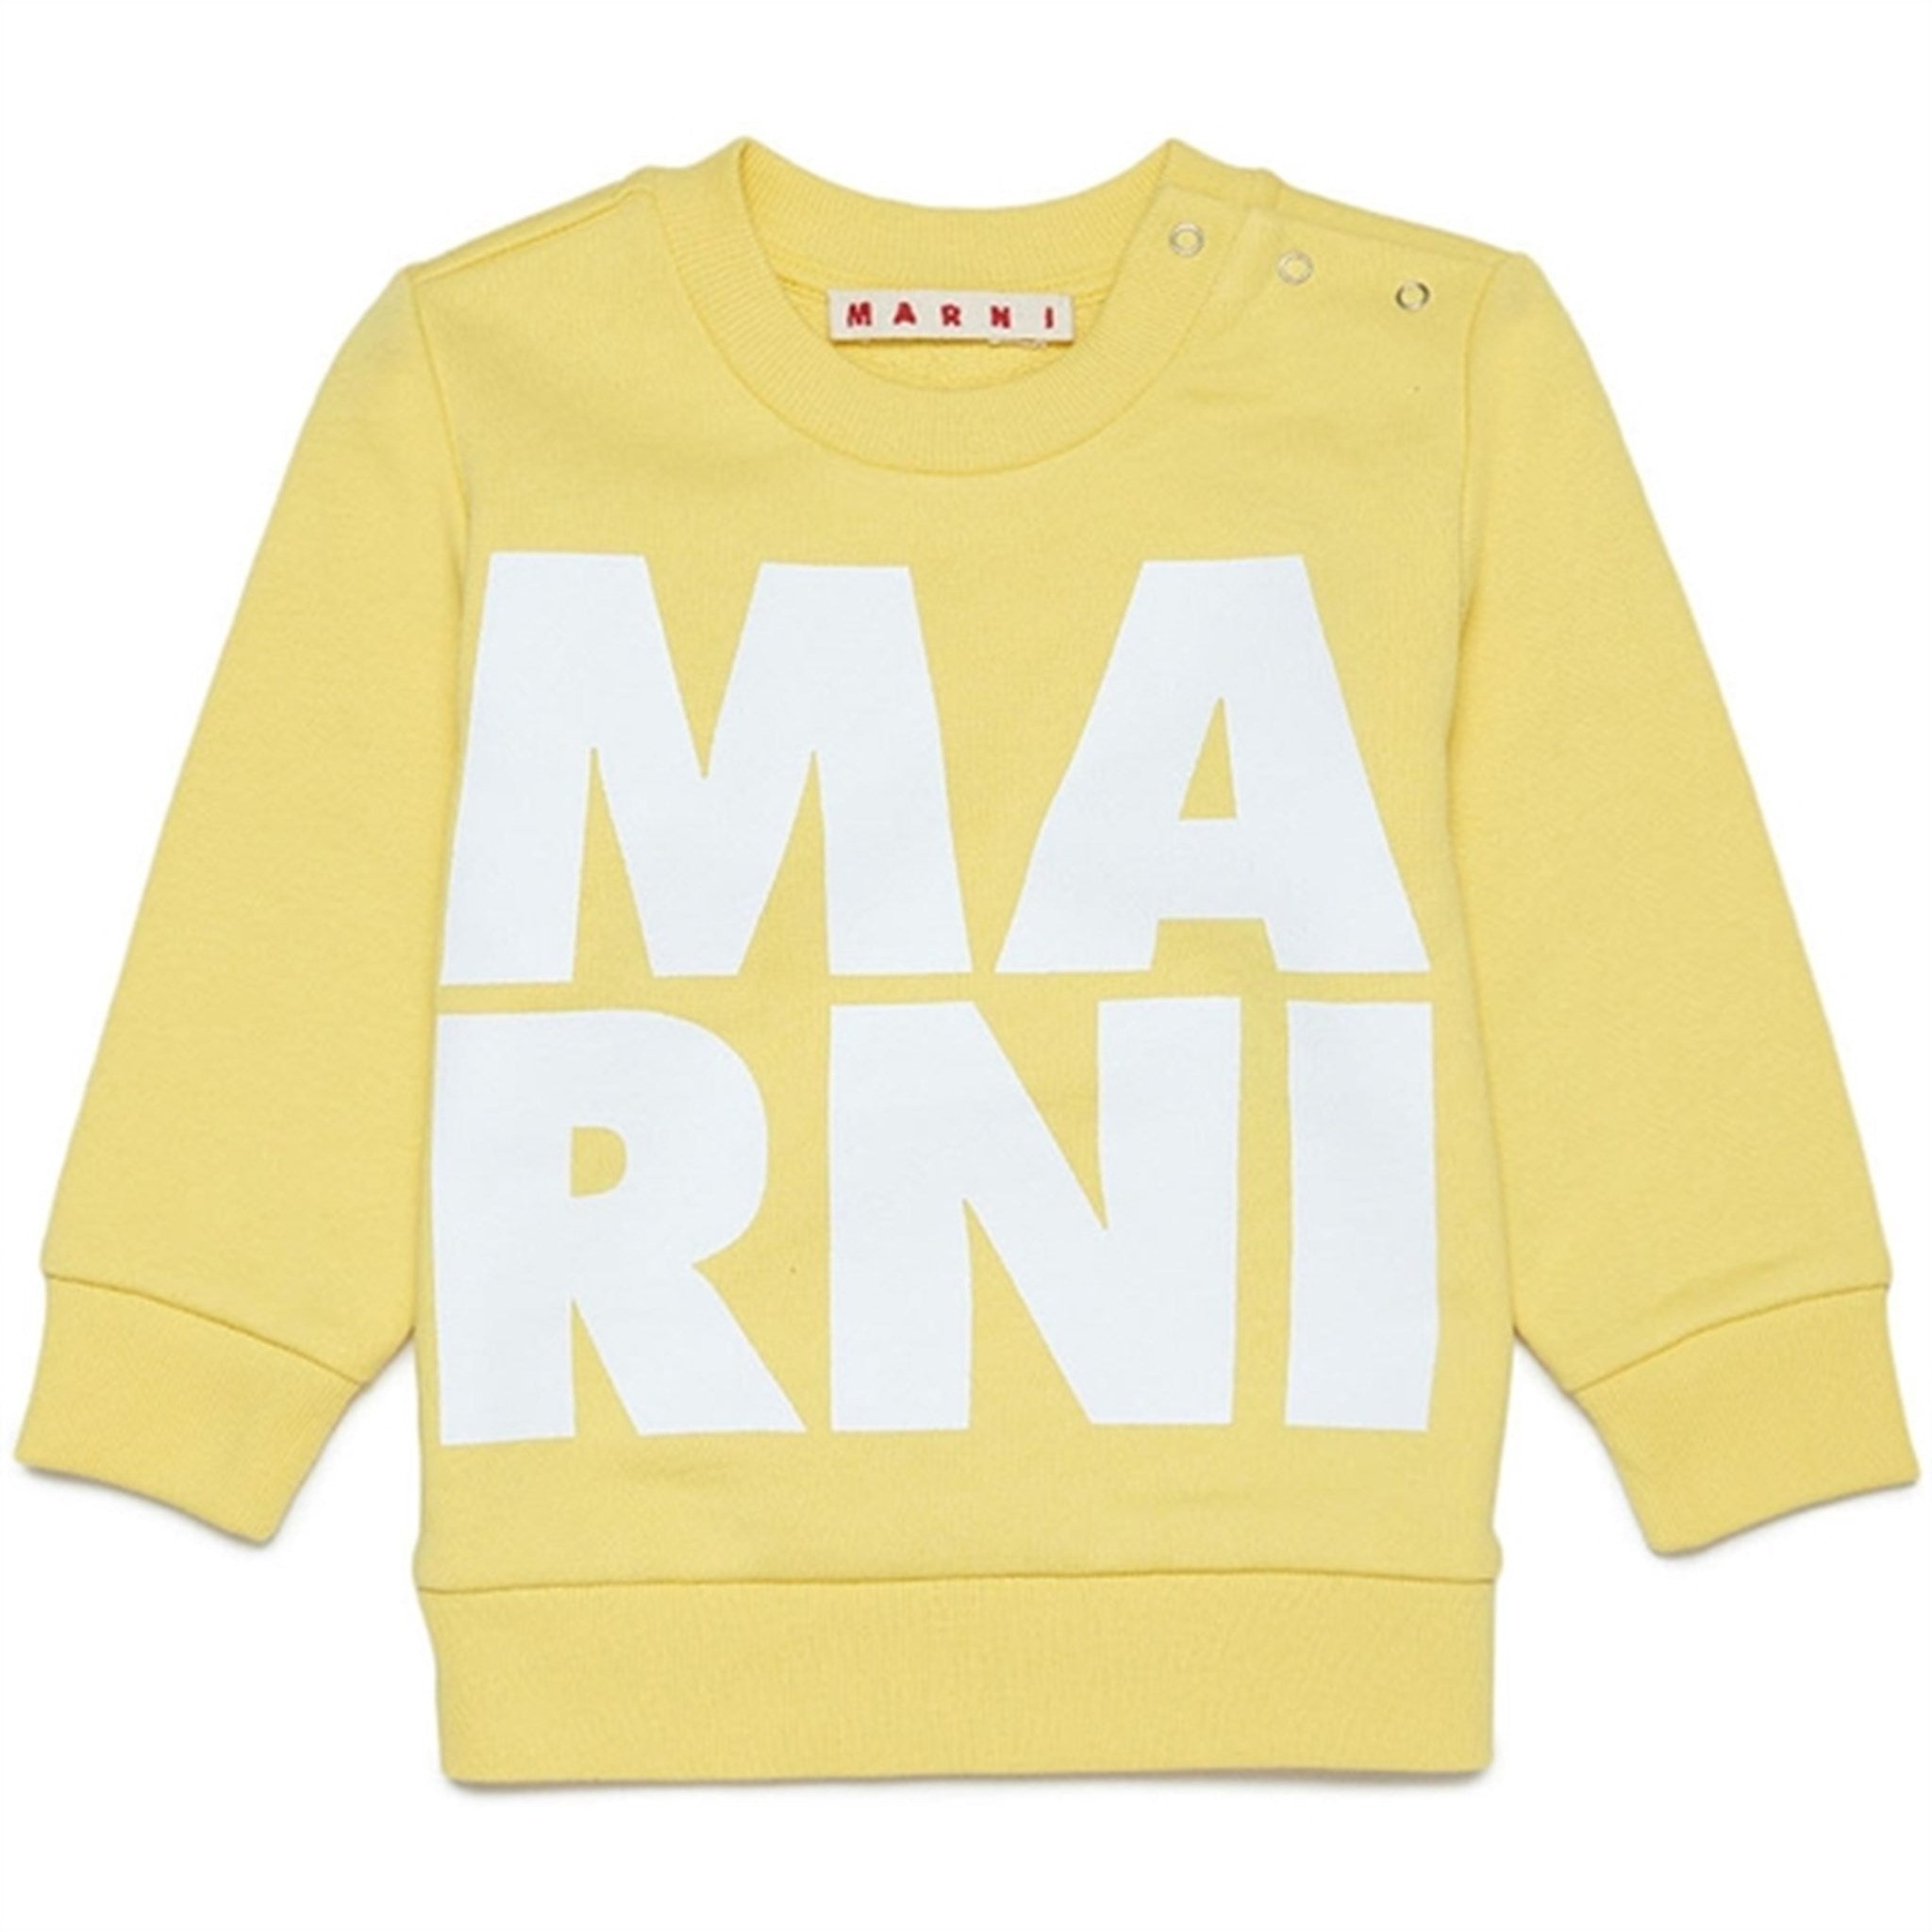 Marni Yellow Sweater